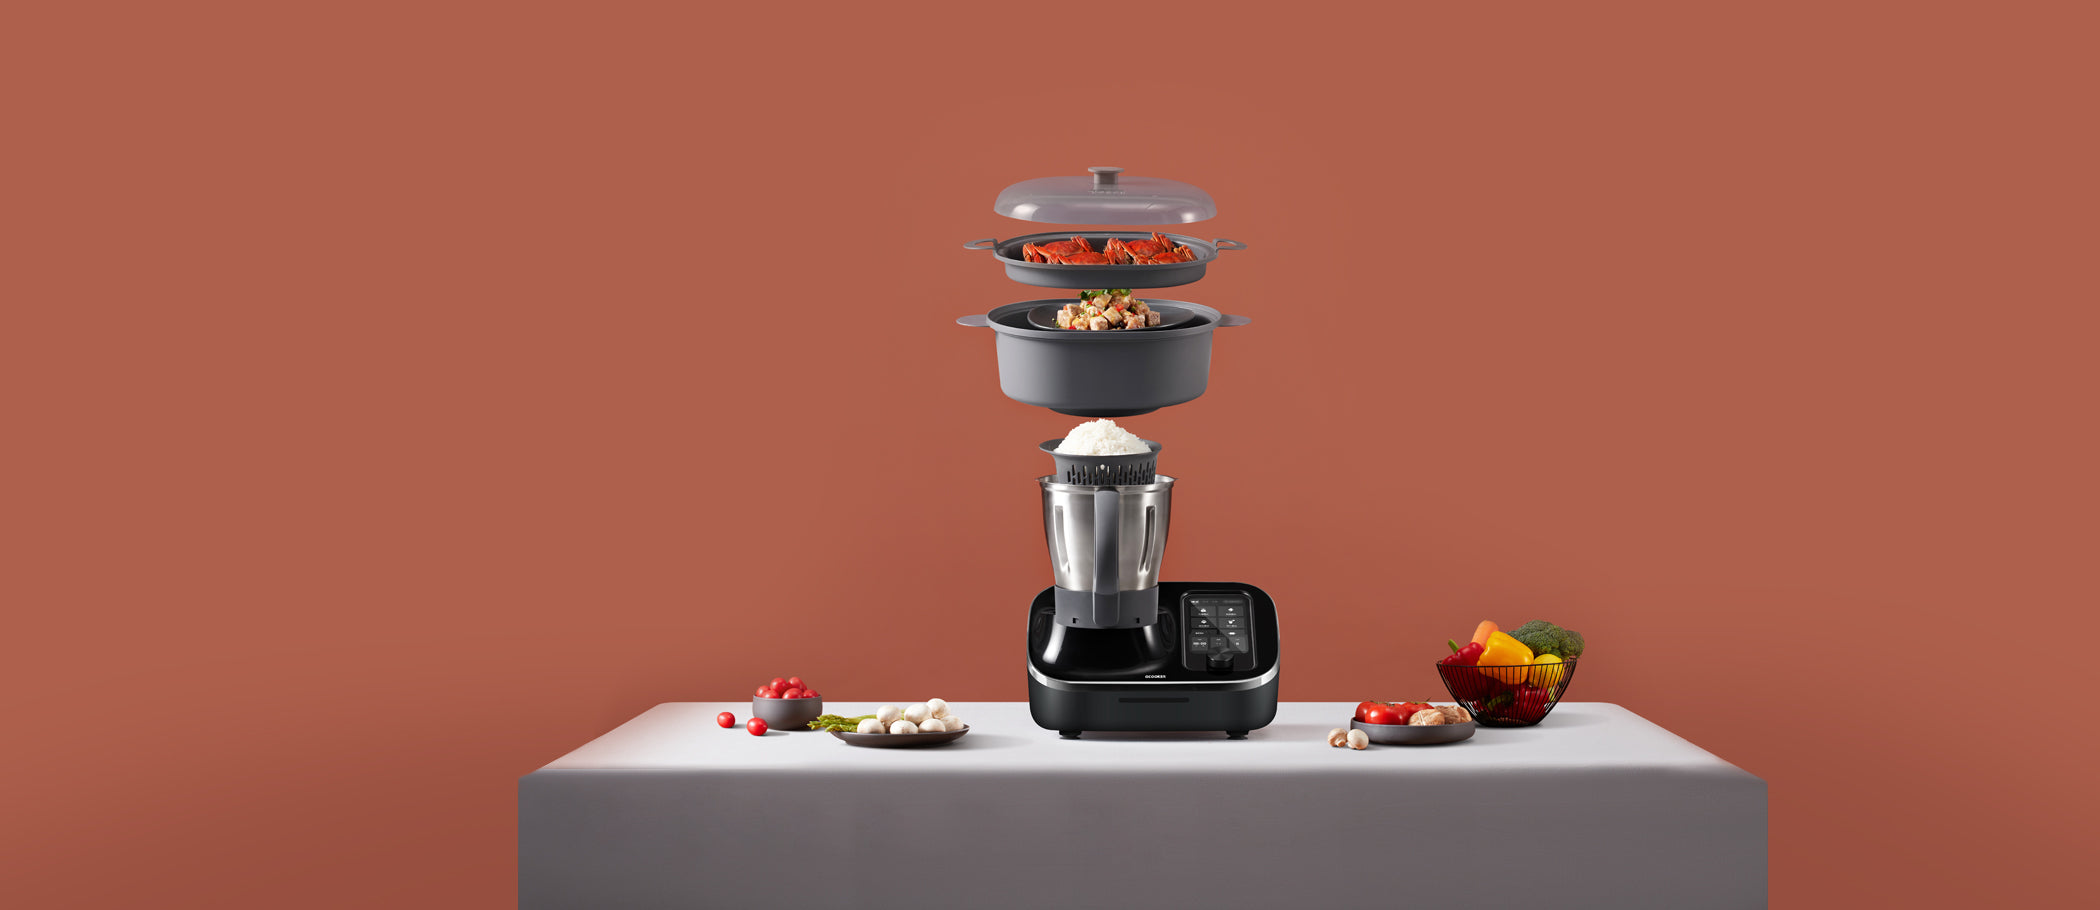 TOKIT Robot Cuisine Multifonction Tout-en-un Robot Patissier 21 Modes de  Cuisine Intégré 7 Pouces Ecran Tactil Guide de Recettes, Pré-nettoyage,  Hachoir, Presse-agrumes, Robot Mélangeur, Mixeur ect : : Cuisine  et Maison